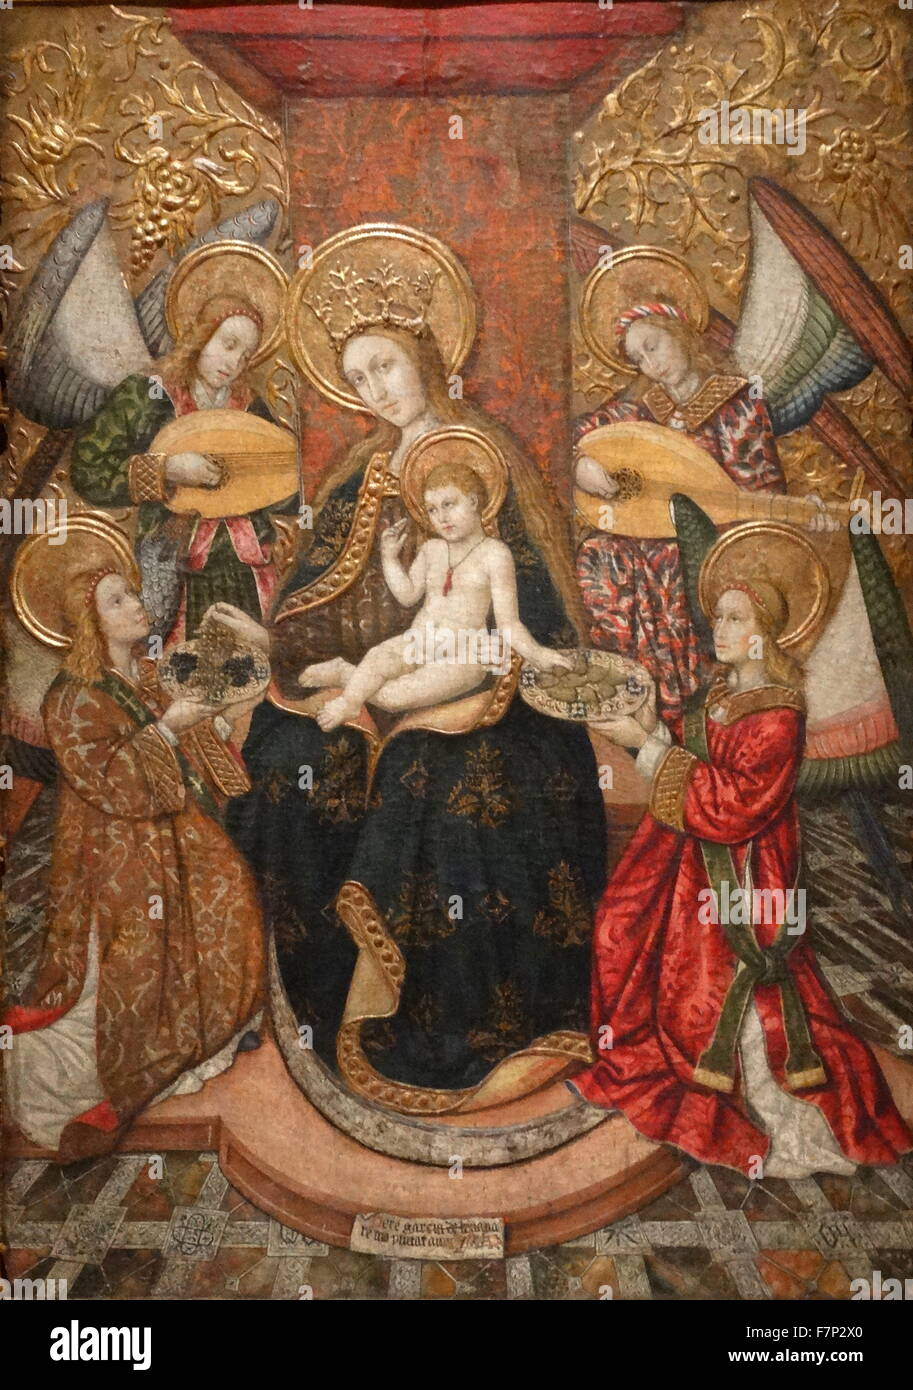 Gemälde mit dem Titel "Jungfrau und vier Engel" von Pedro Garcia Benavarri, katalanischen Maler. Vom 15. Jahrhundert Stockfoto